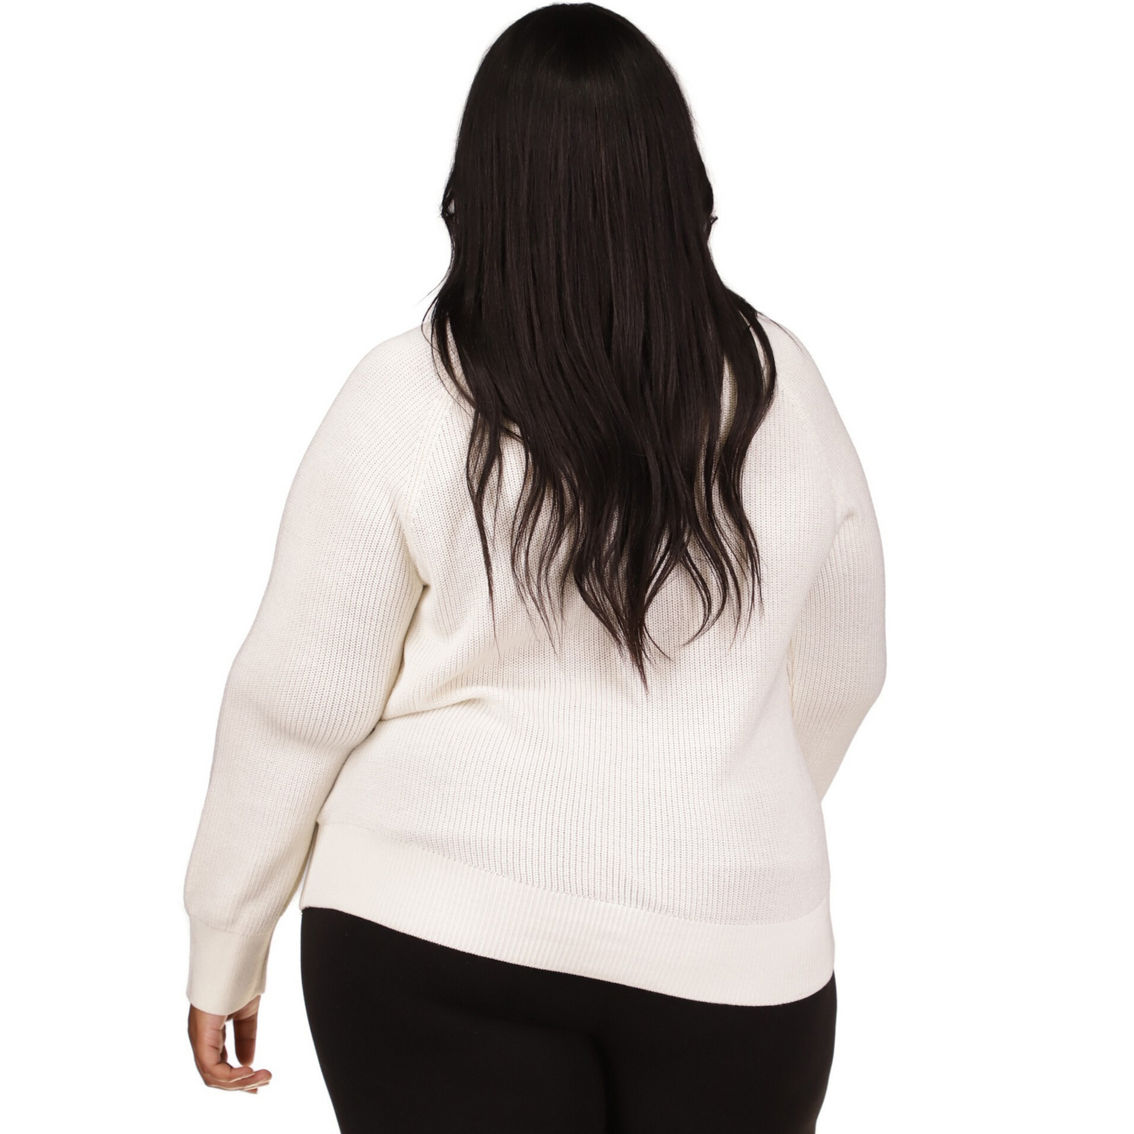 Michael Kors Plus Size Crop Shaker Zip Sweater - Image 2 of 4